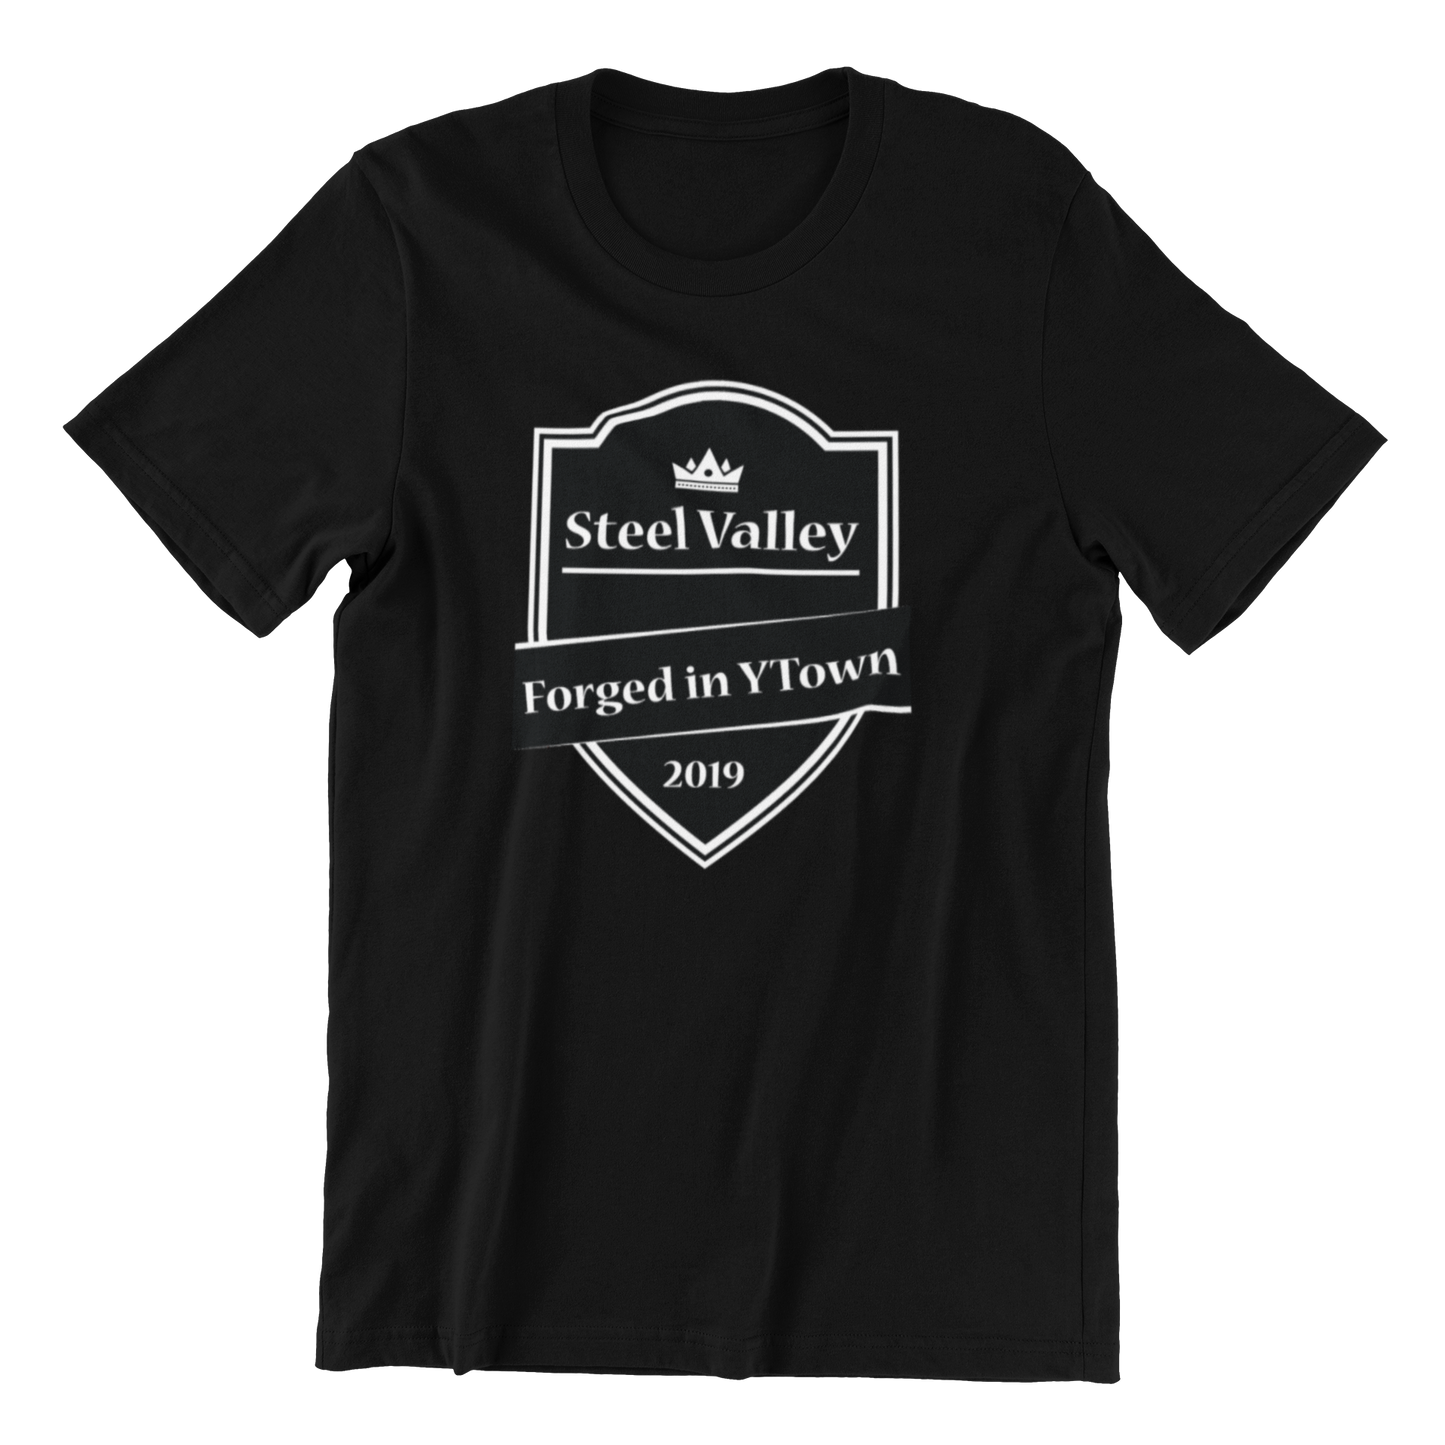 Vintage Steel Valley v1 T-shirt